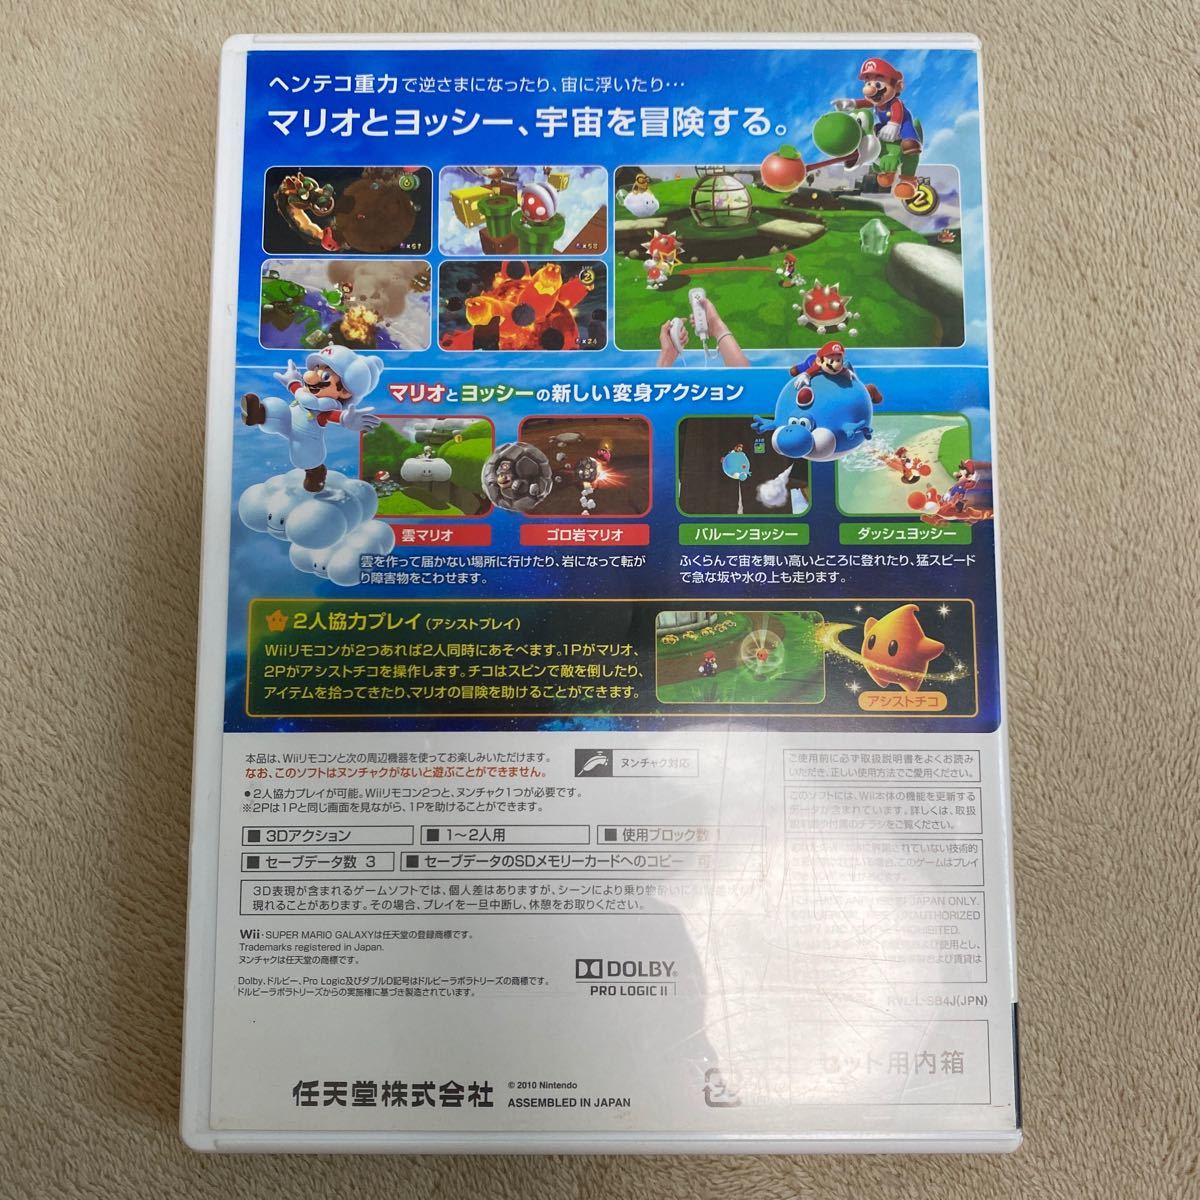 スーパーマリオギャラクシー2 Wii MARIO